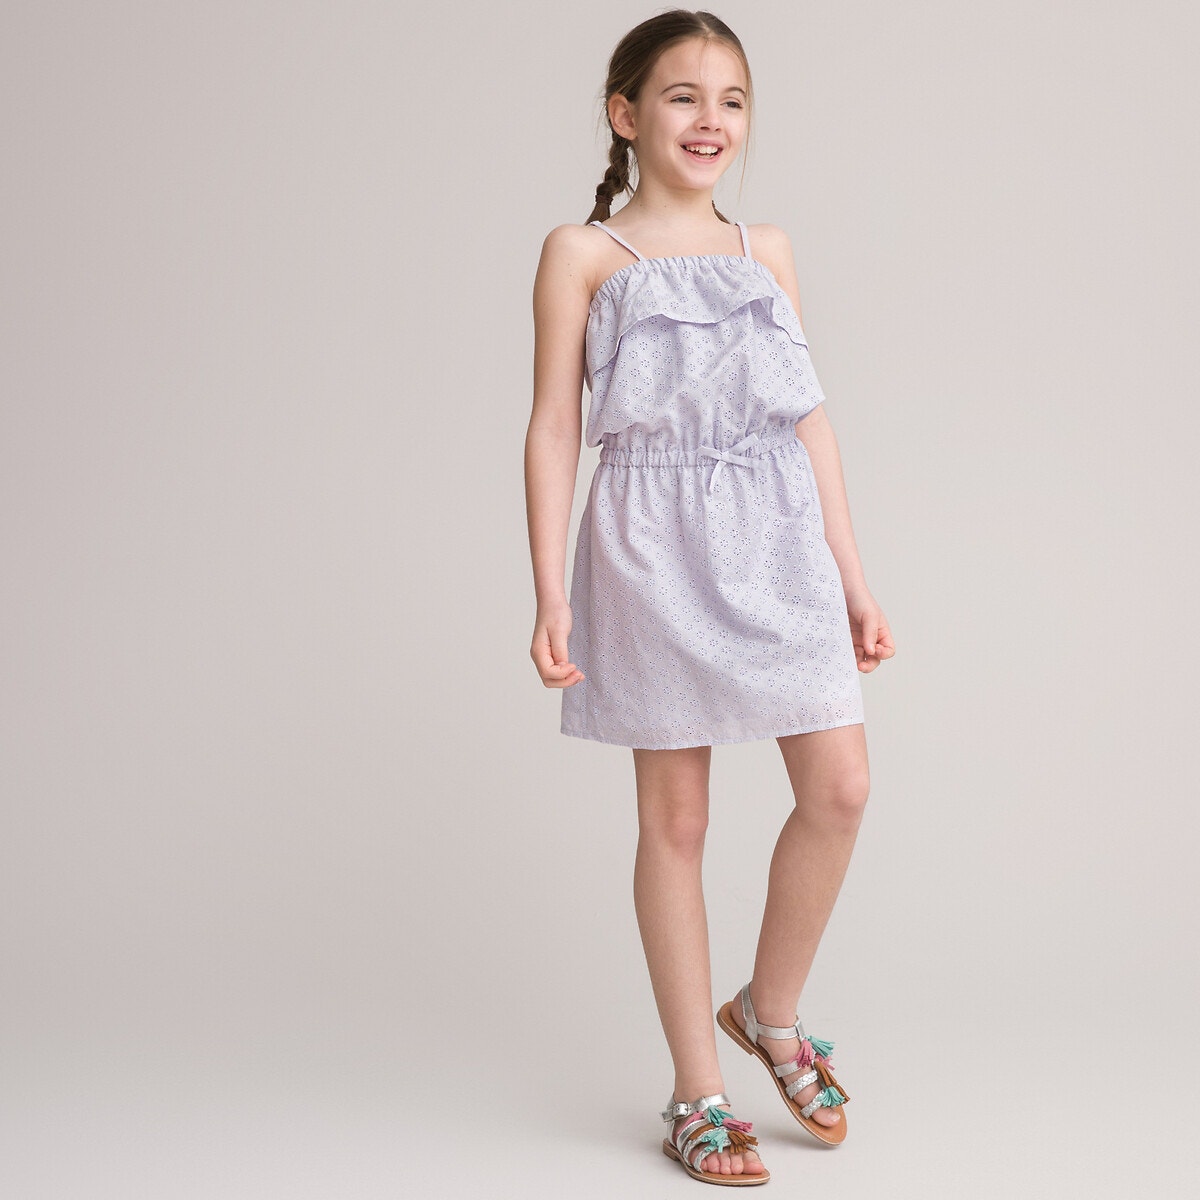 Φόρεμα με λεπτές τιράντες από κοφτό κέντημα, 3-12 ετών